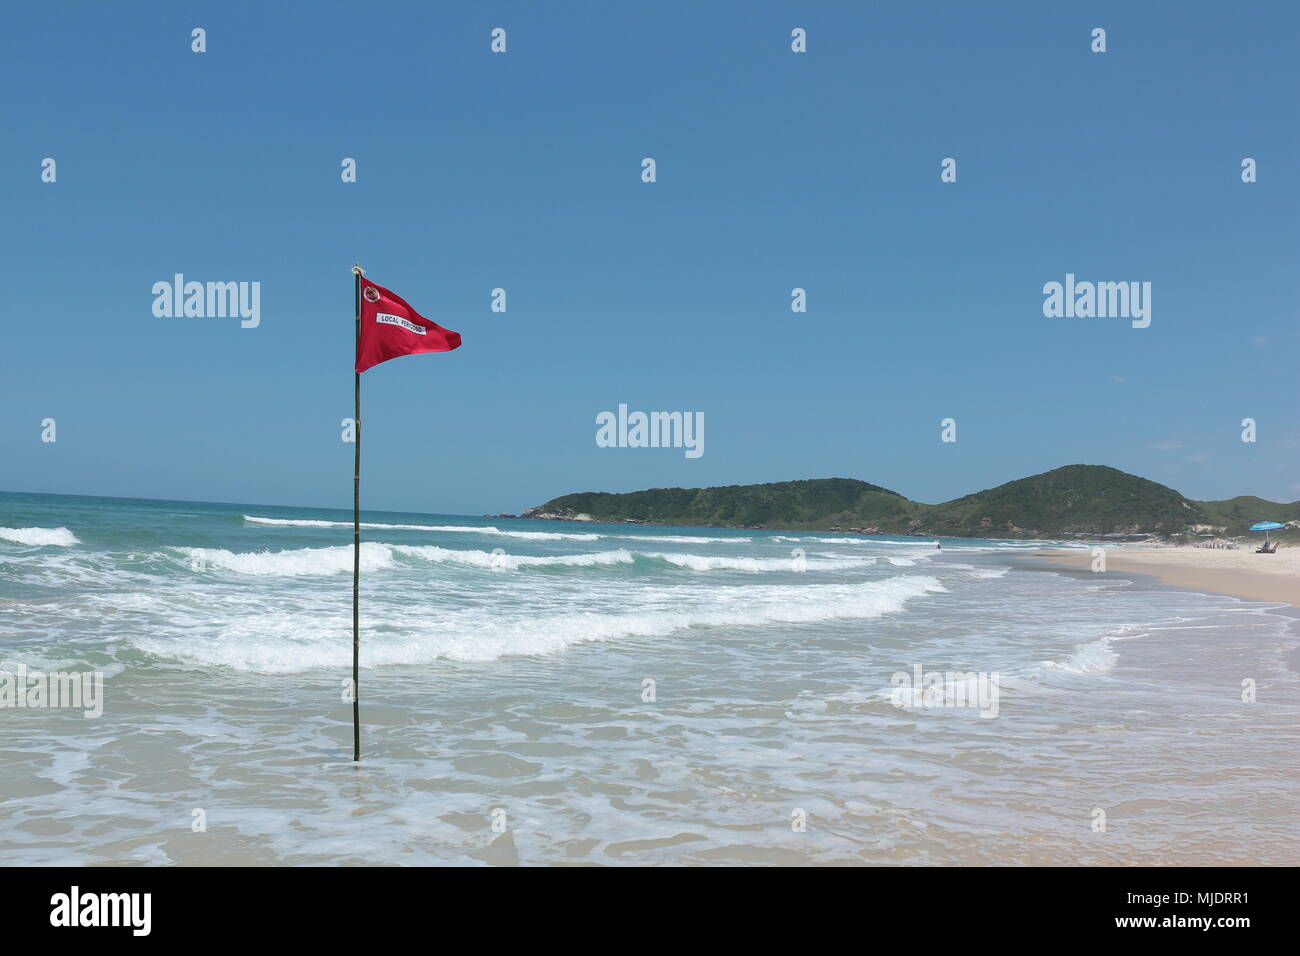 Bandera roja que indica peligro de socorrista en la playa. Praia do Rosa, Brasil Foto de stock